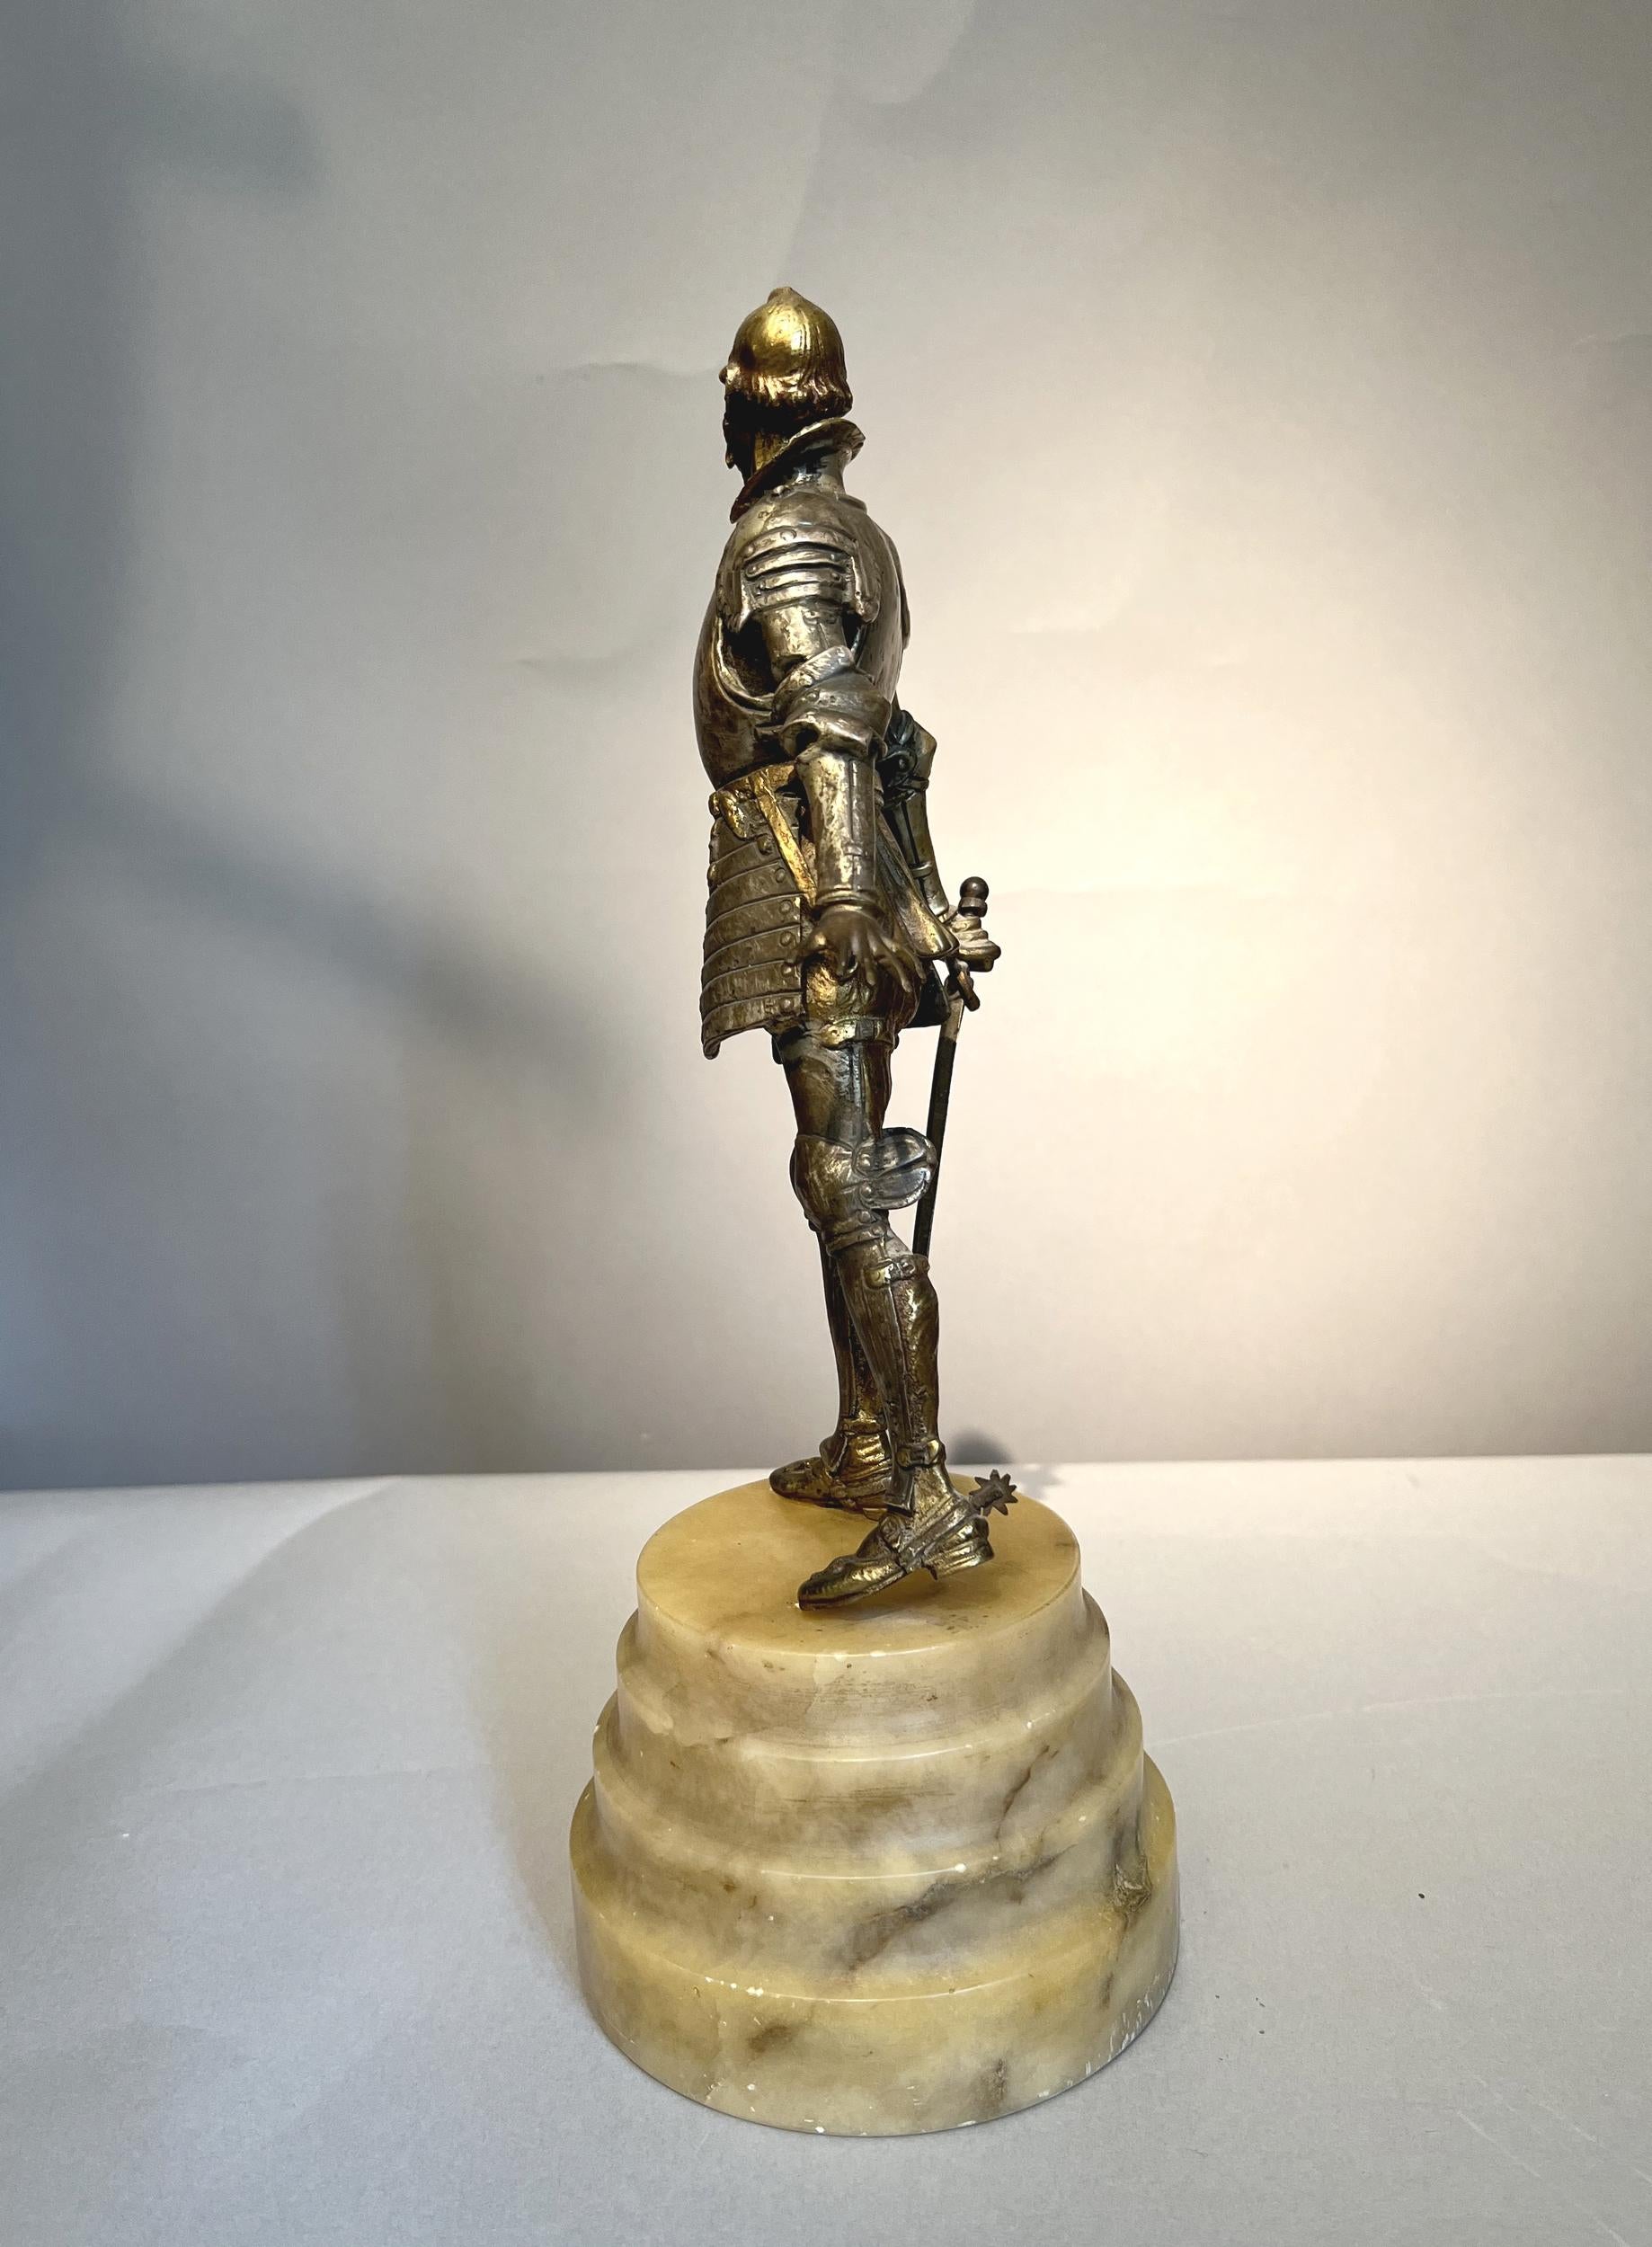 Statuette de Don Quichotte en bronze doré et argenté, sur une haute base en albâtre.